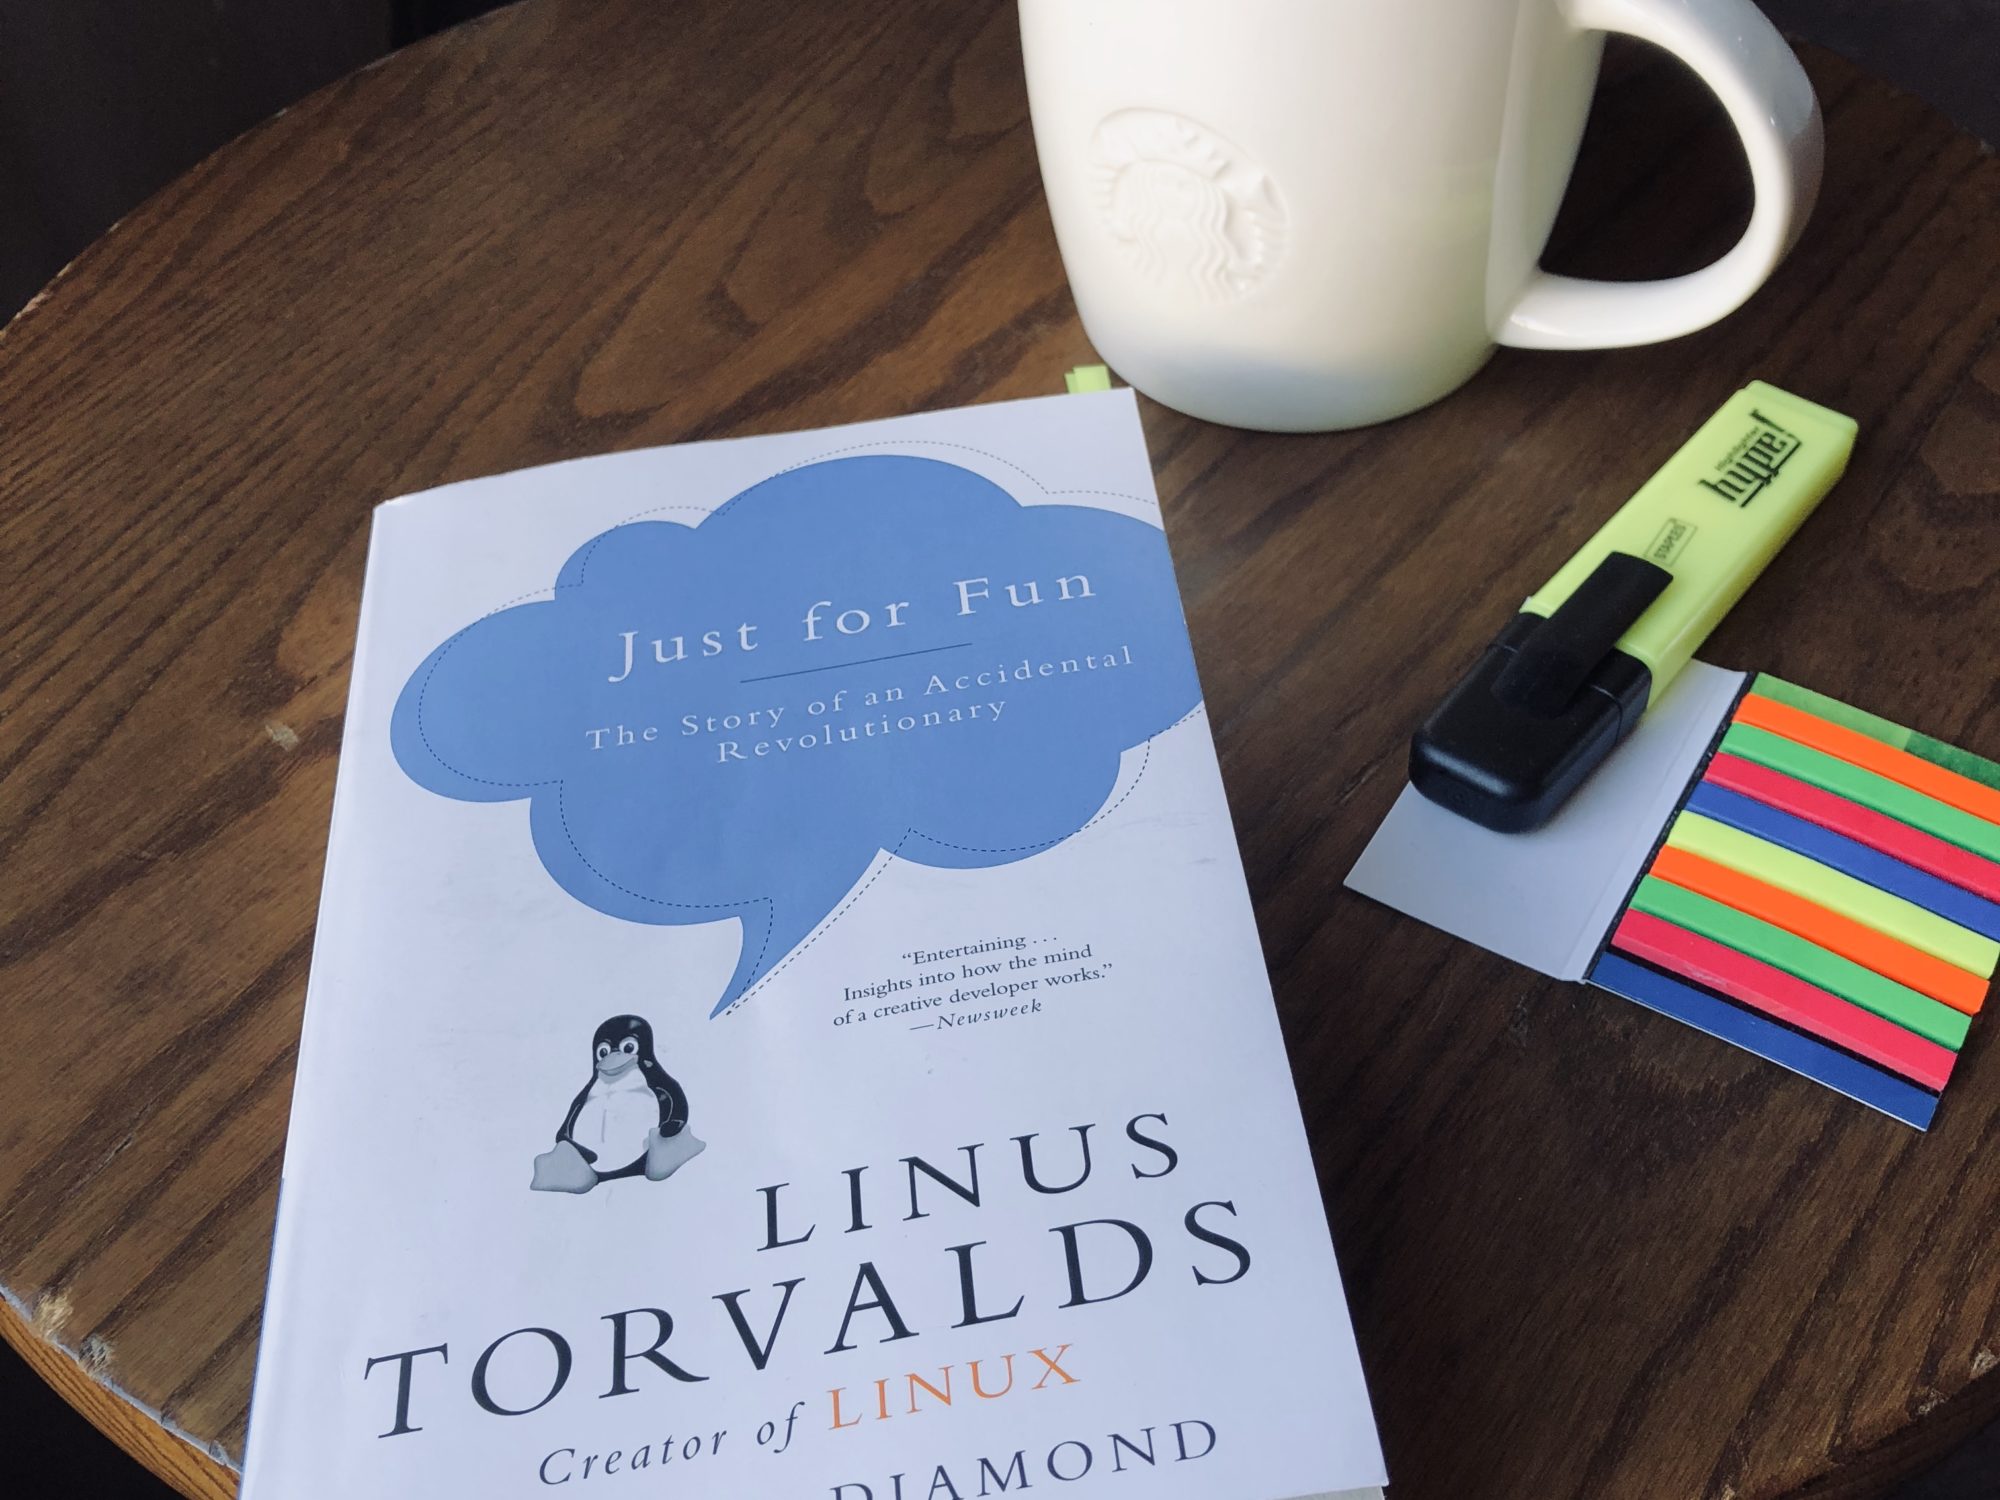 کتاب صوتی فقط برای تفریح داستان یک انقلاب اتفاقی - زندگینامه ی لینوس توروالدز و داستان خلق لینوکس